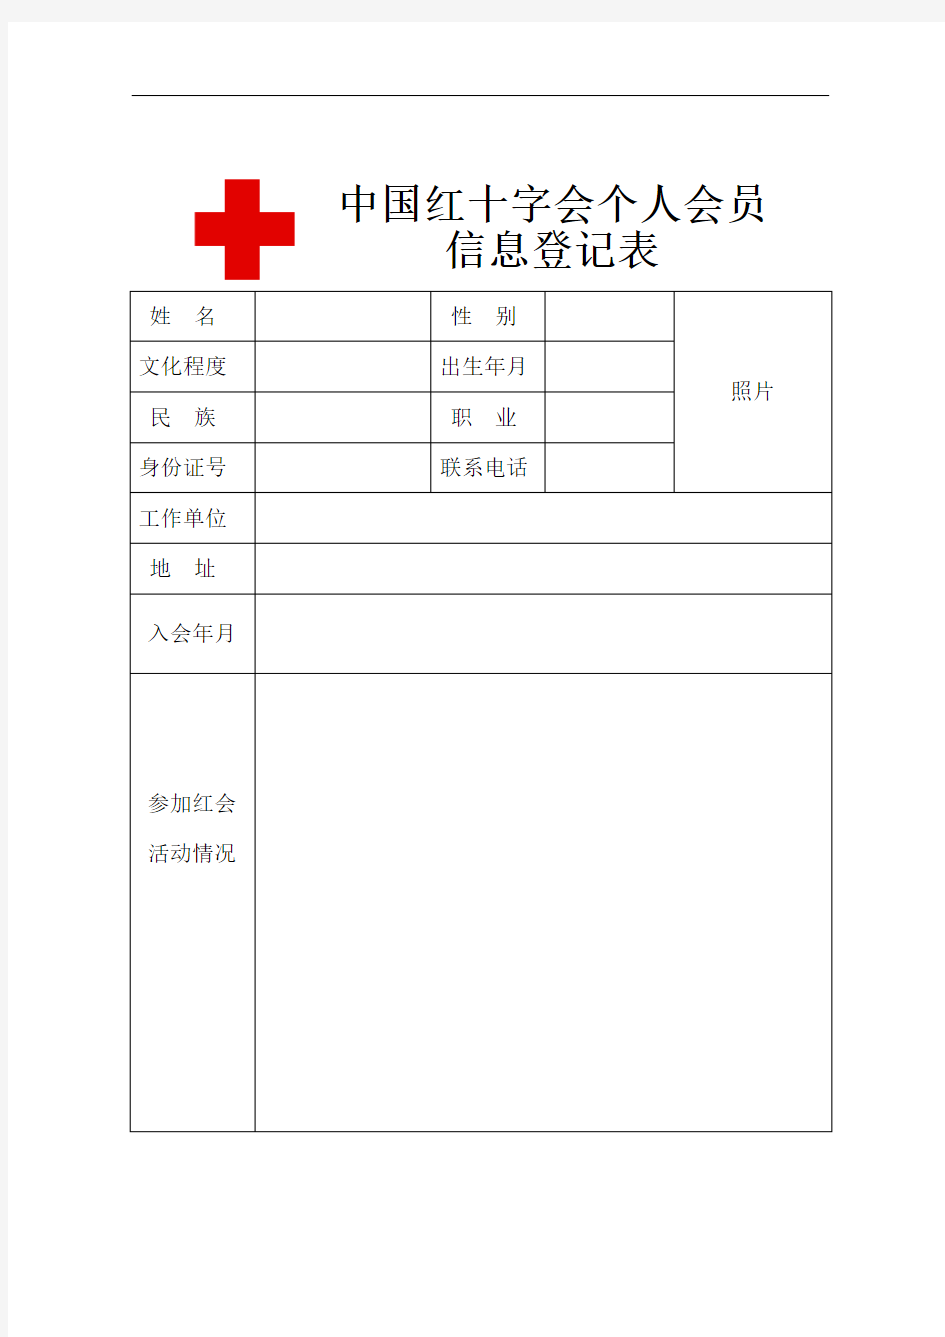 红十字会会员信息登记表